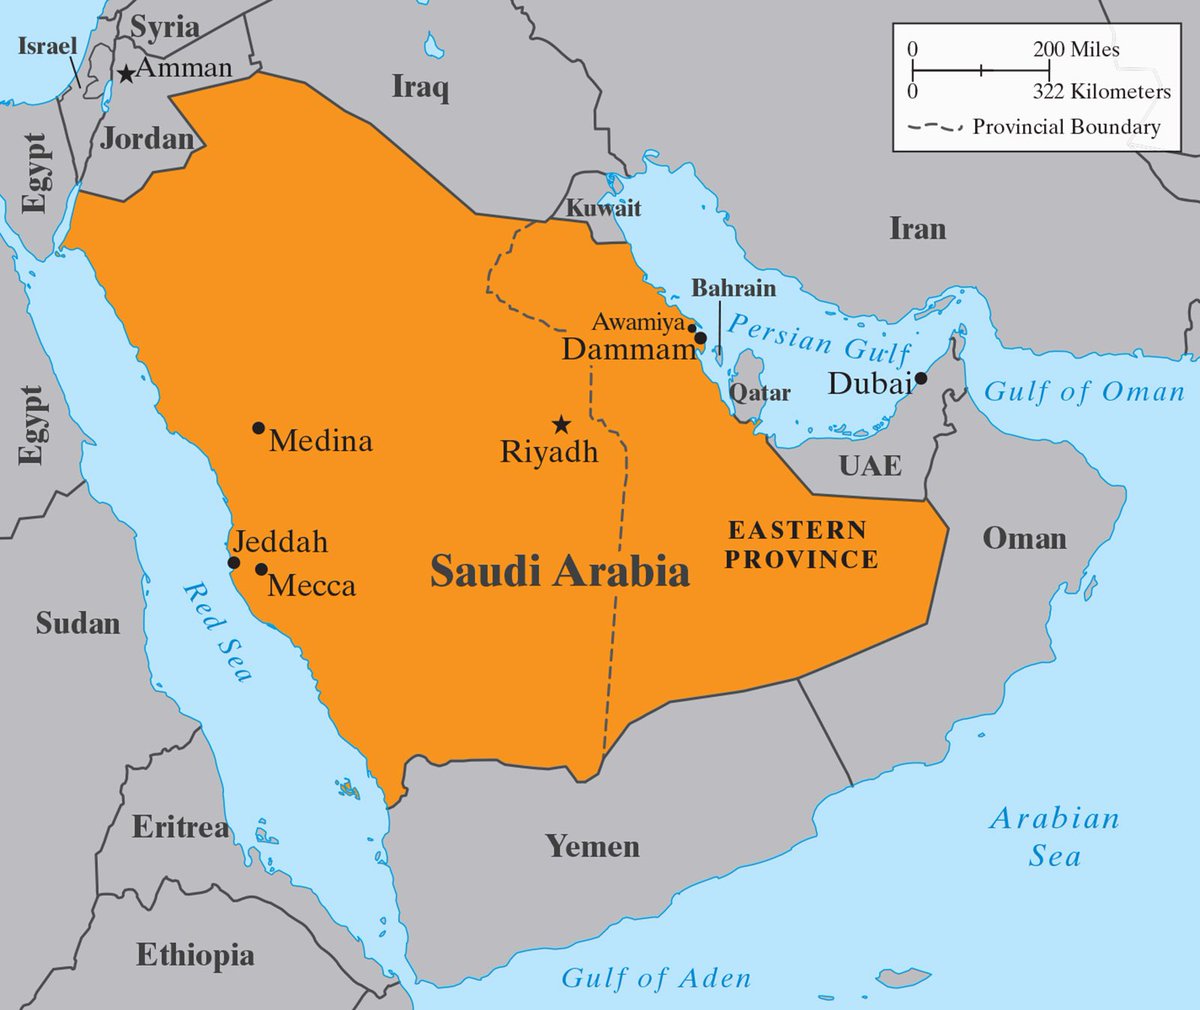 саудовская аравия на карте